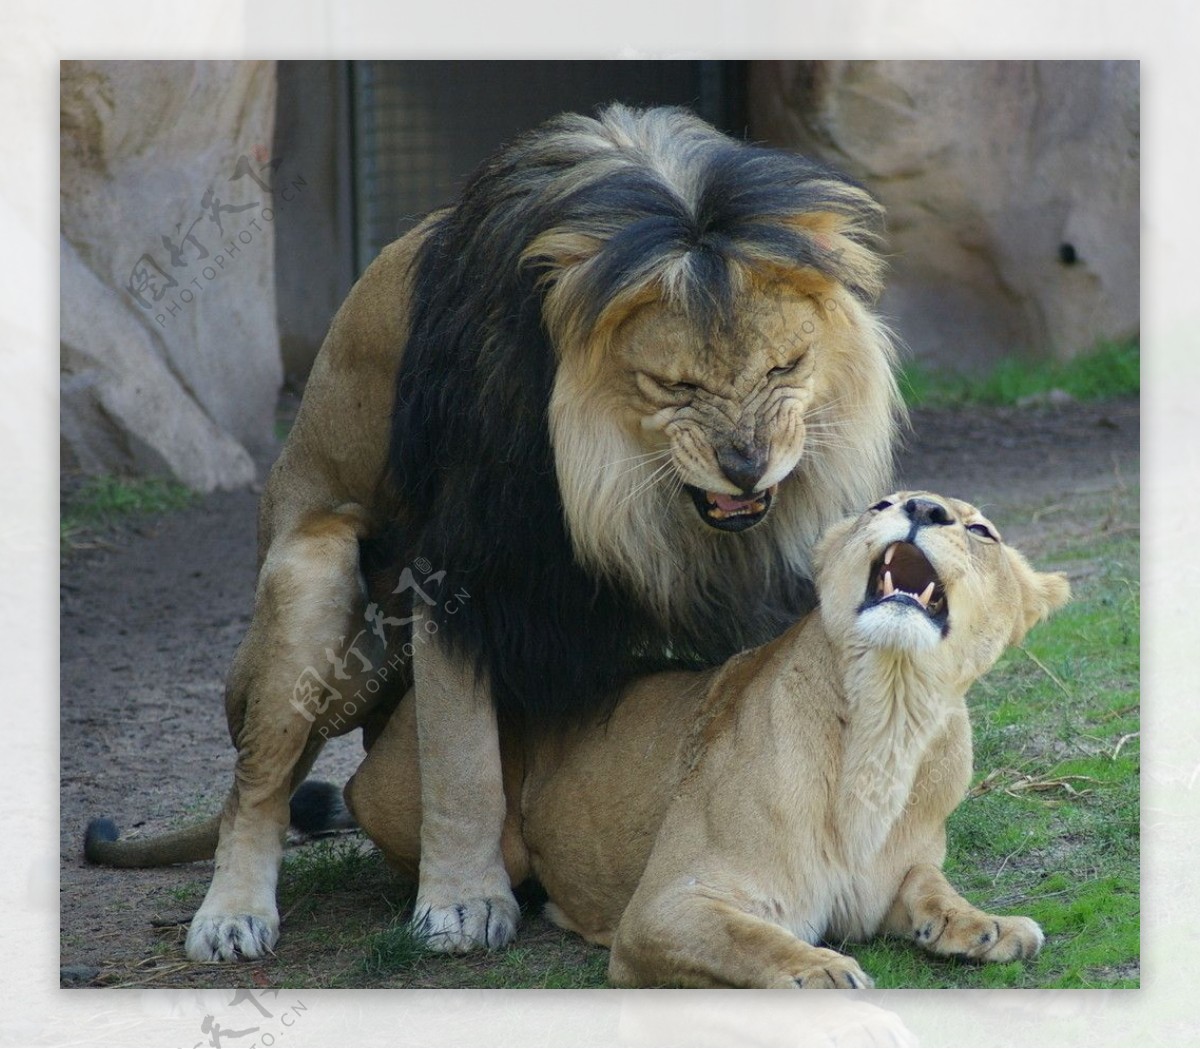 狮子母狮图片